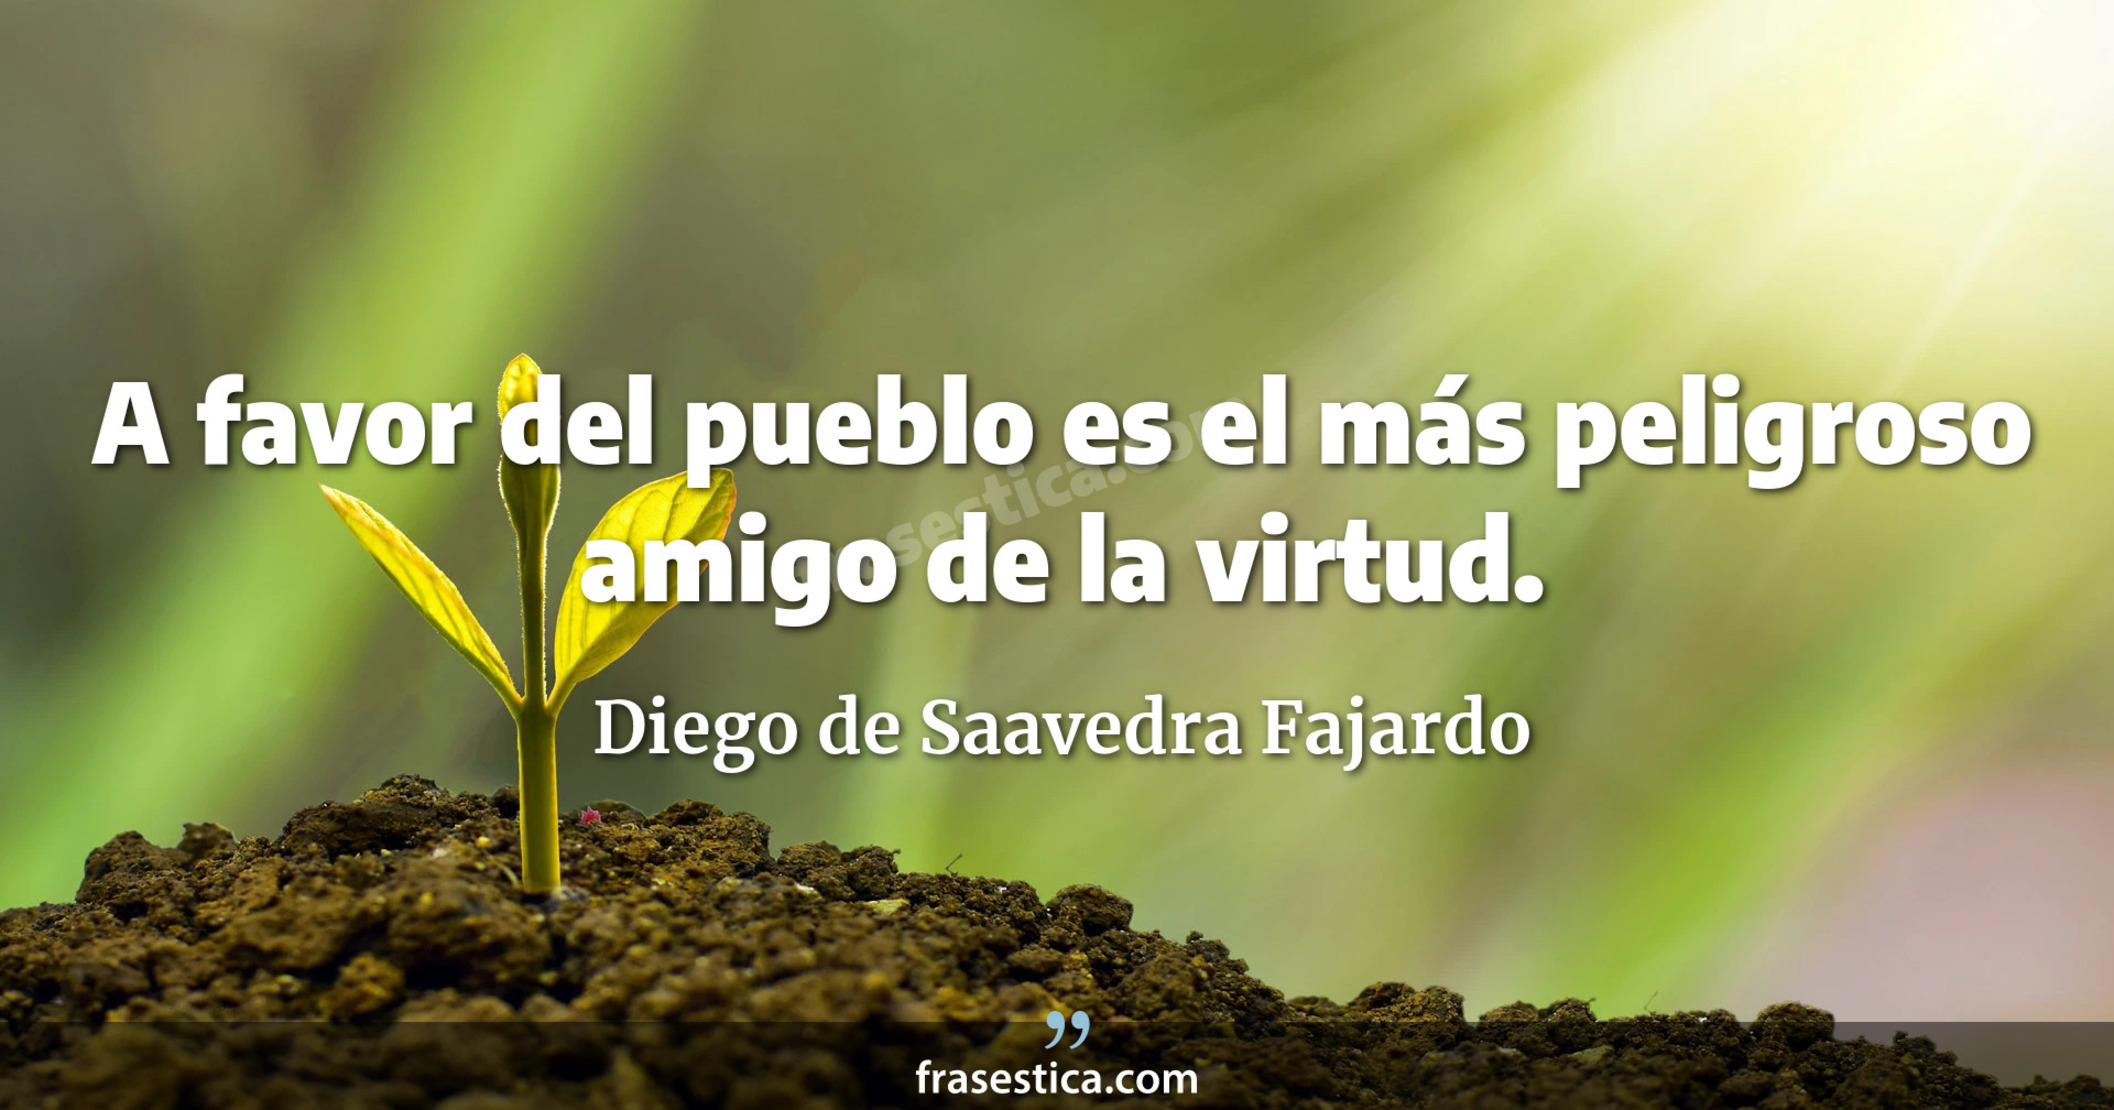 A favor del pueblo es el más peligroso amigo de la virtud. - Diego de Saavedra Fajardo